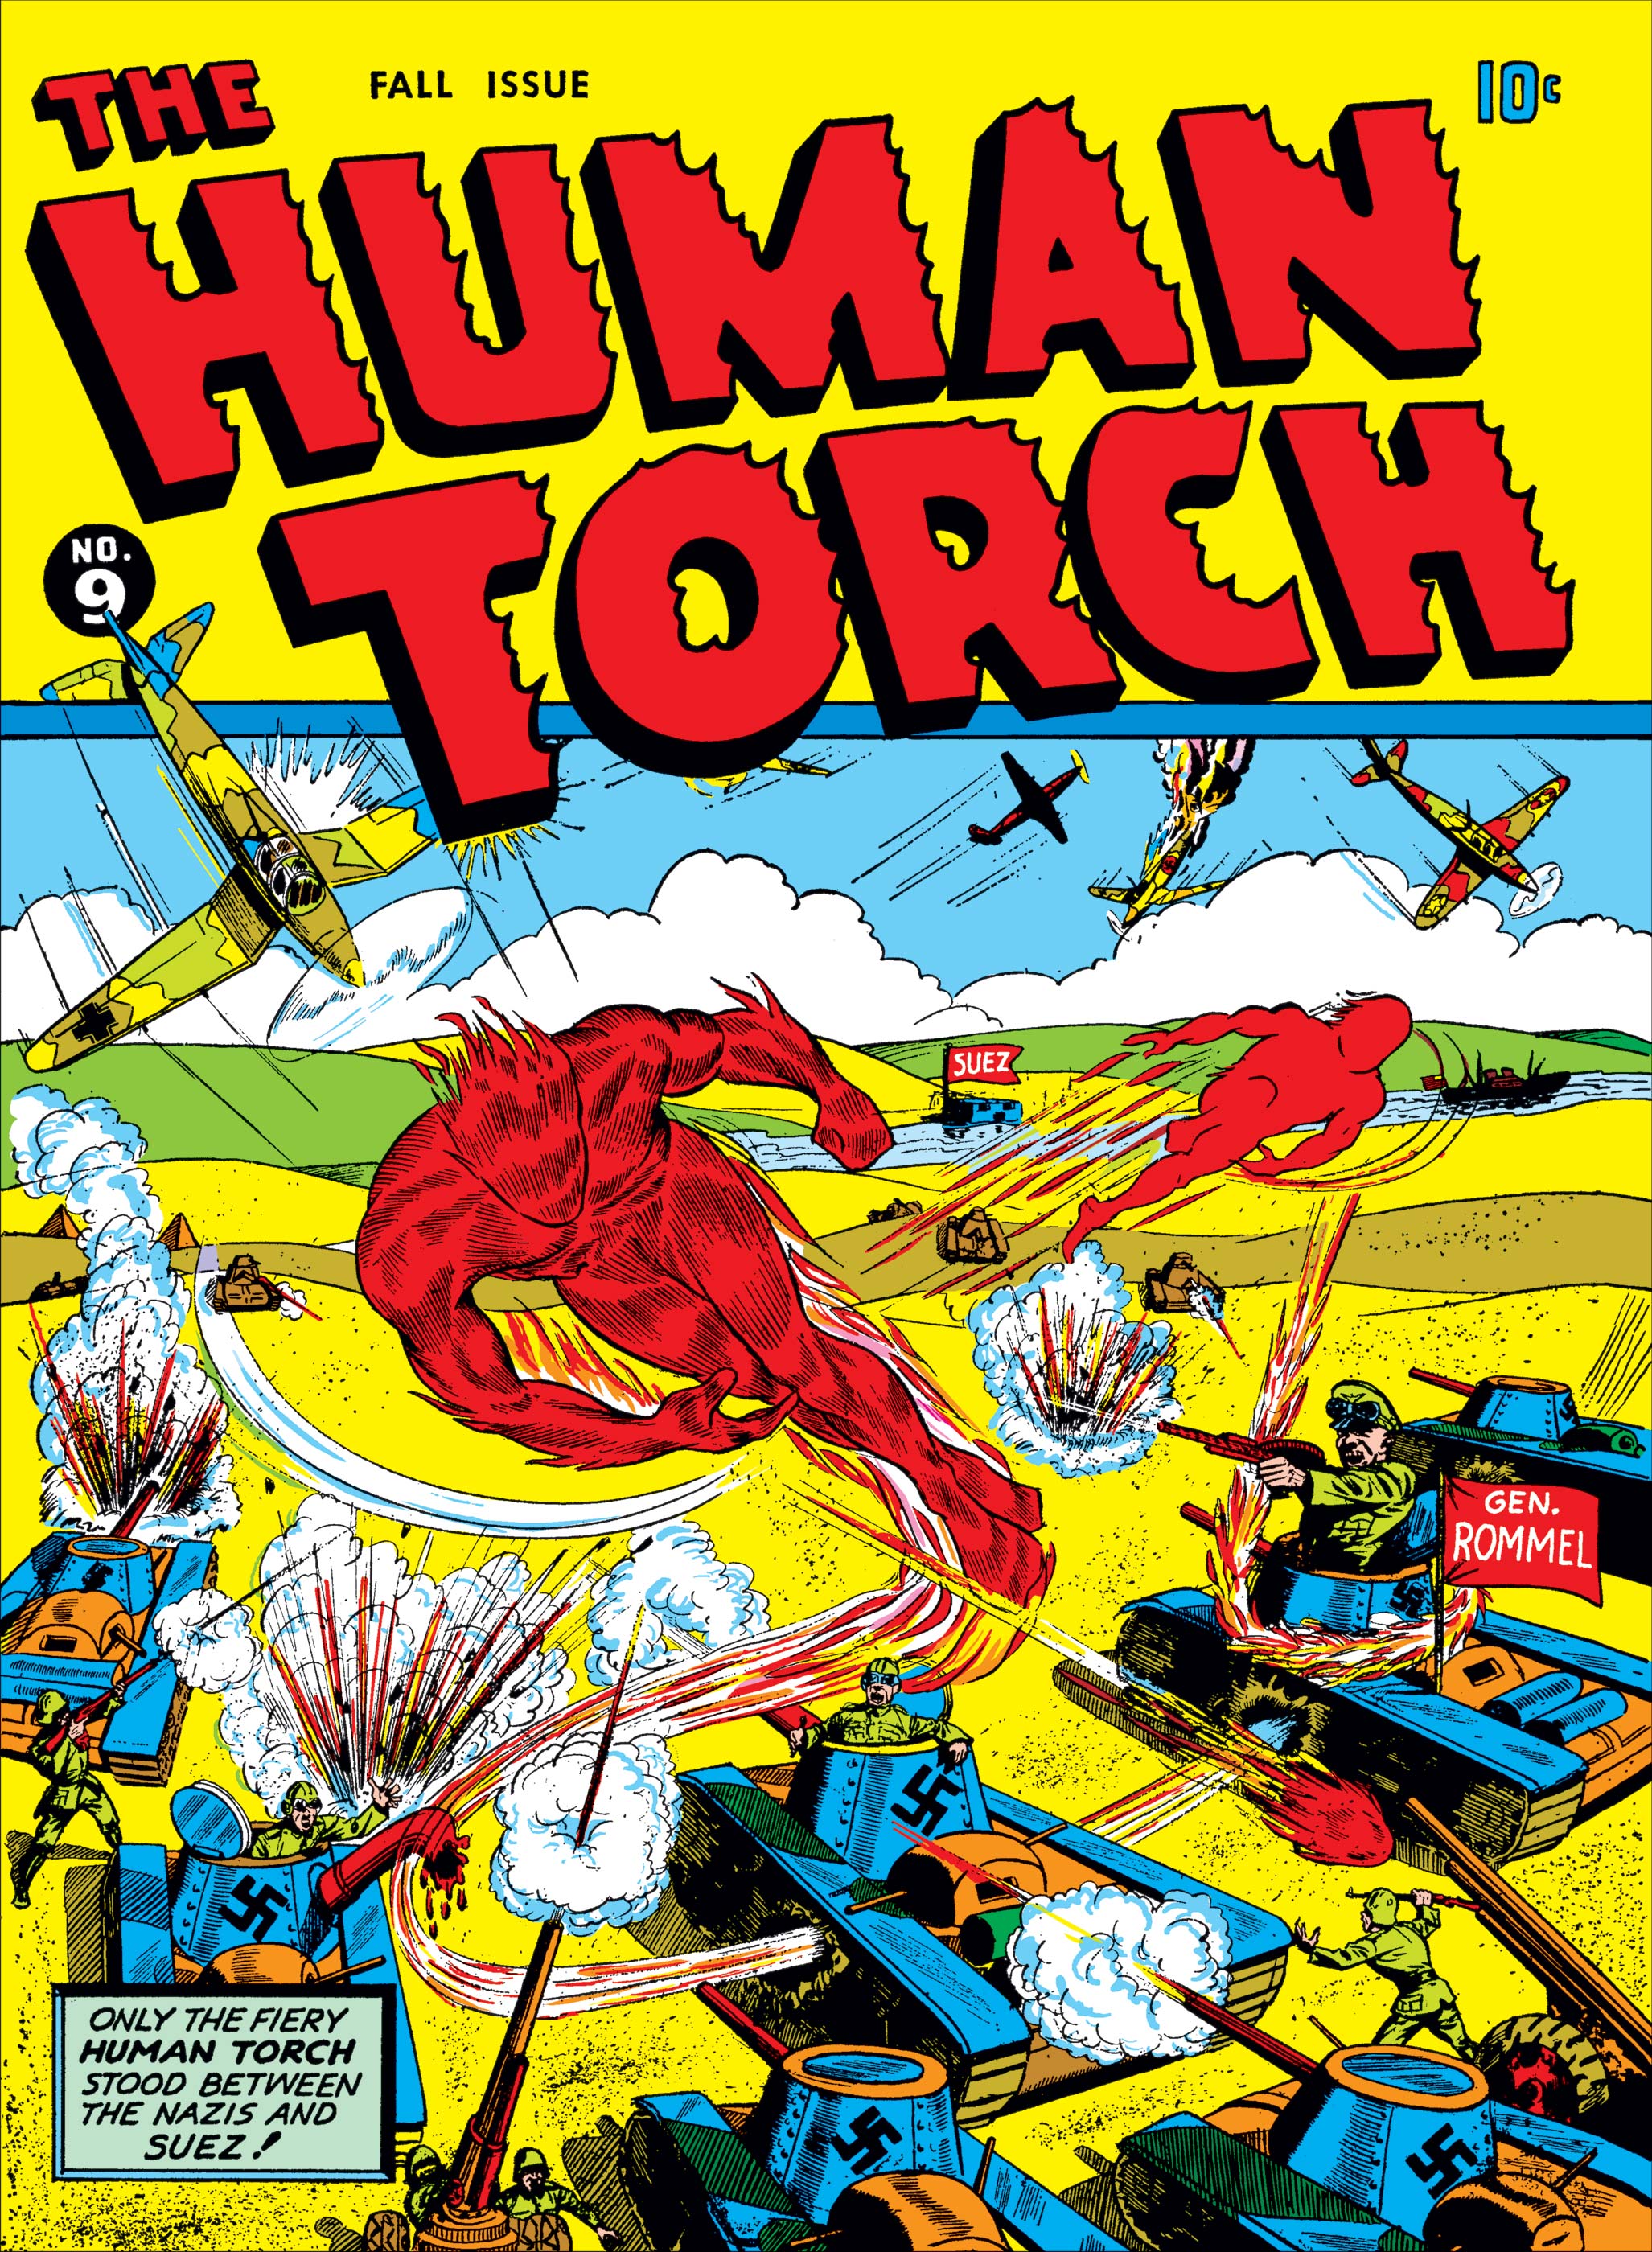 Human Torch Comics (1940) #9